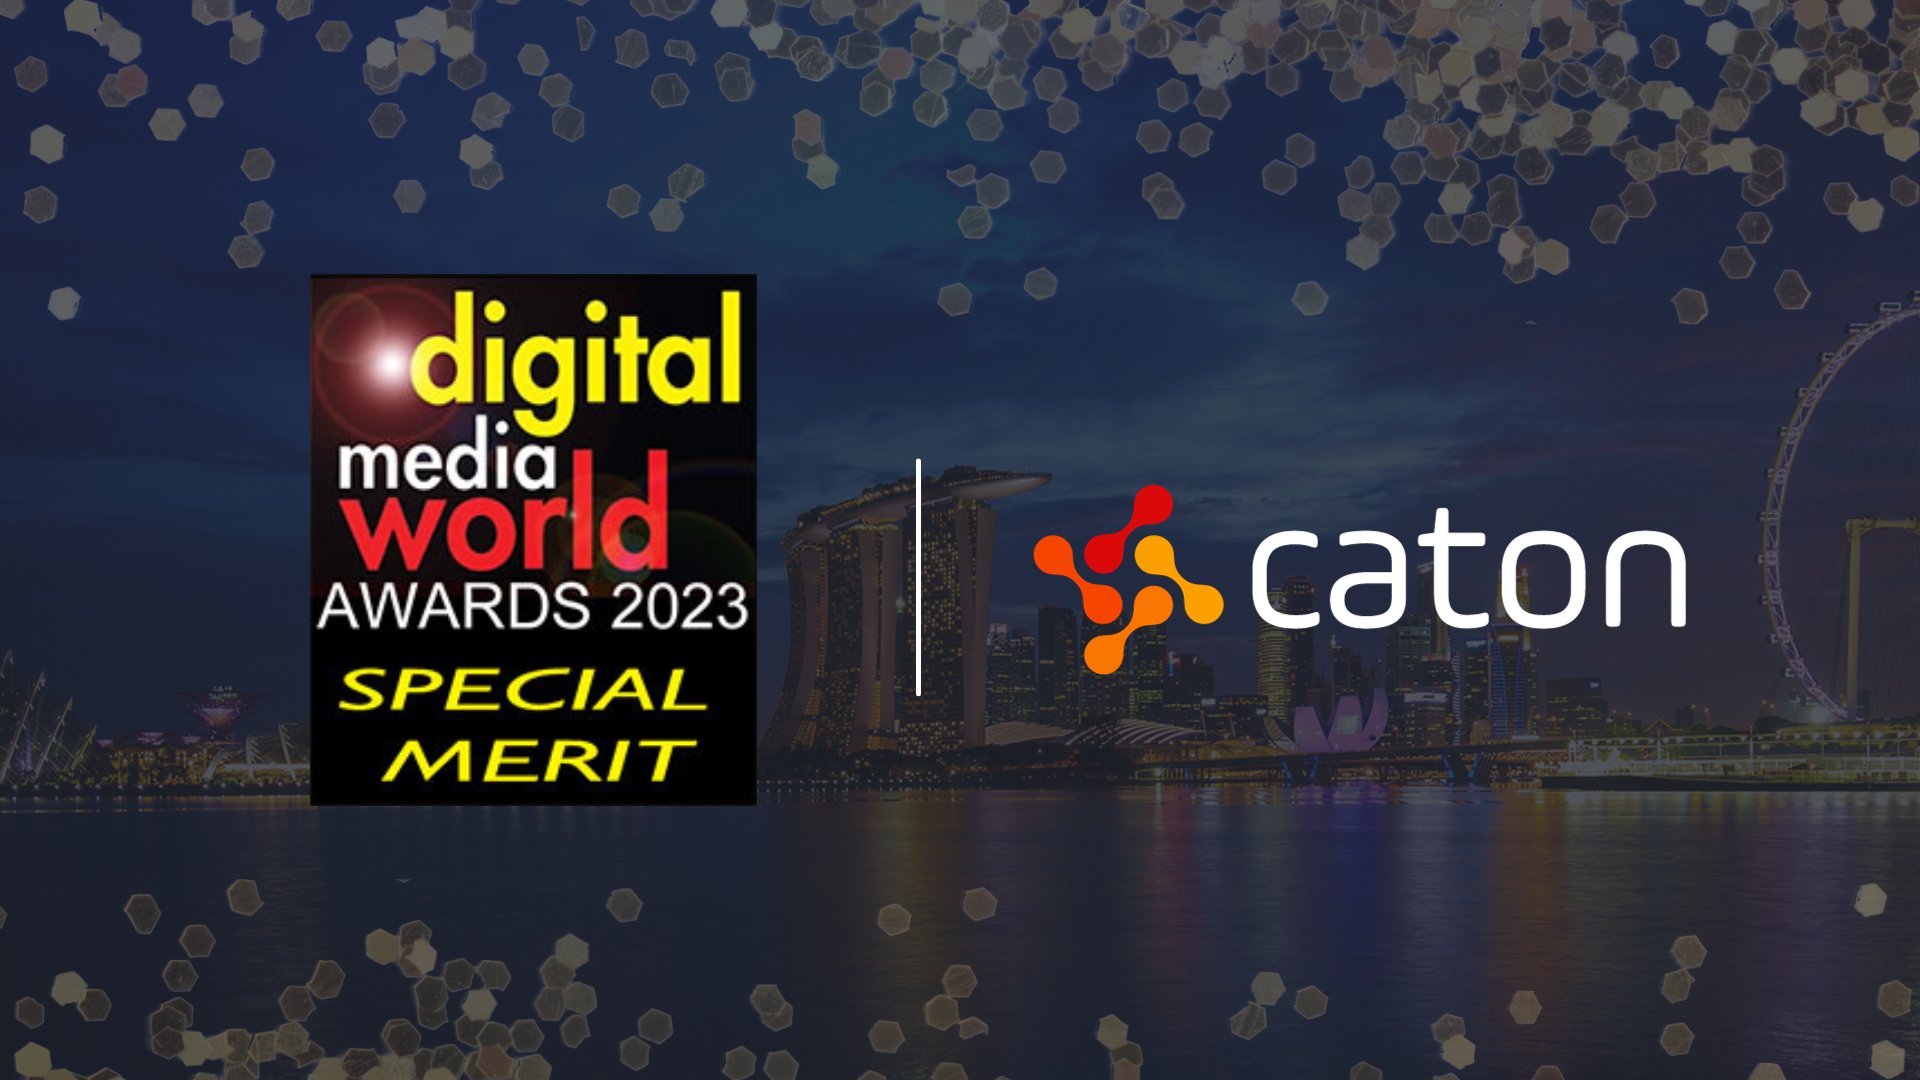 Digital Media World Awards 2023 - Special Merit